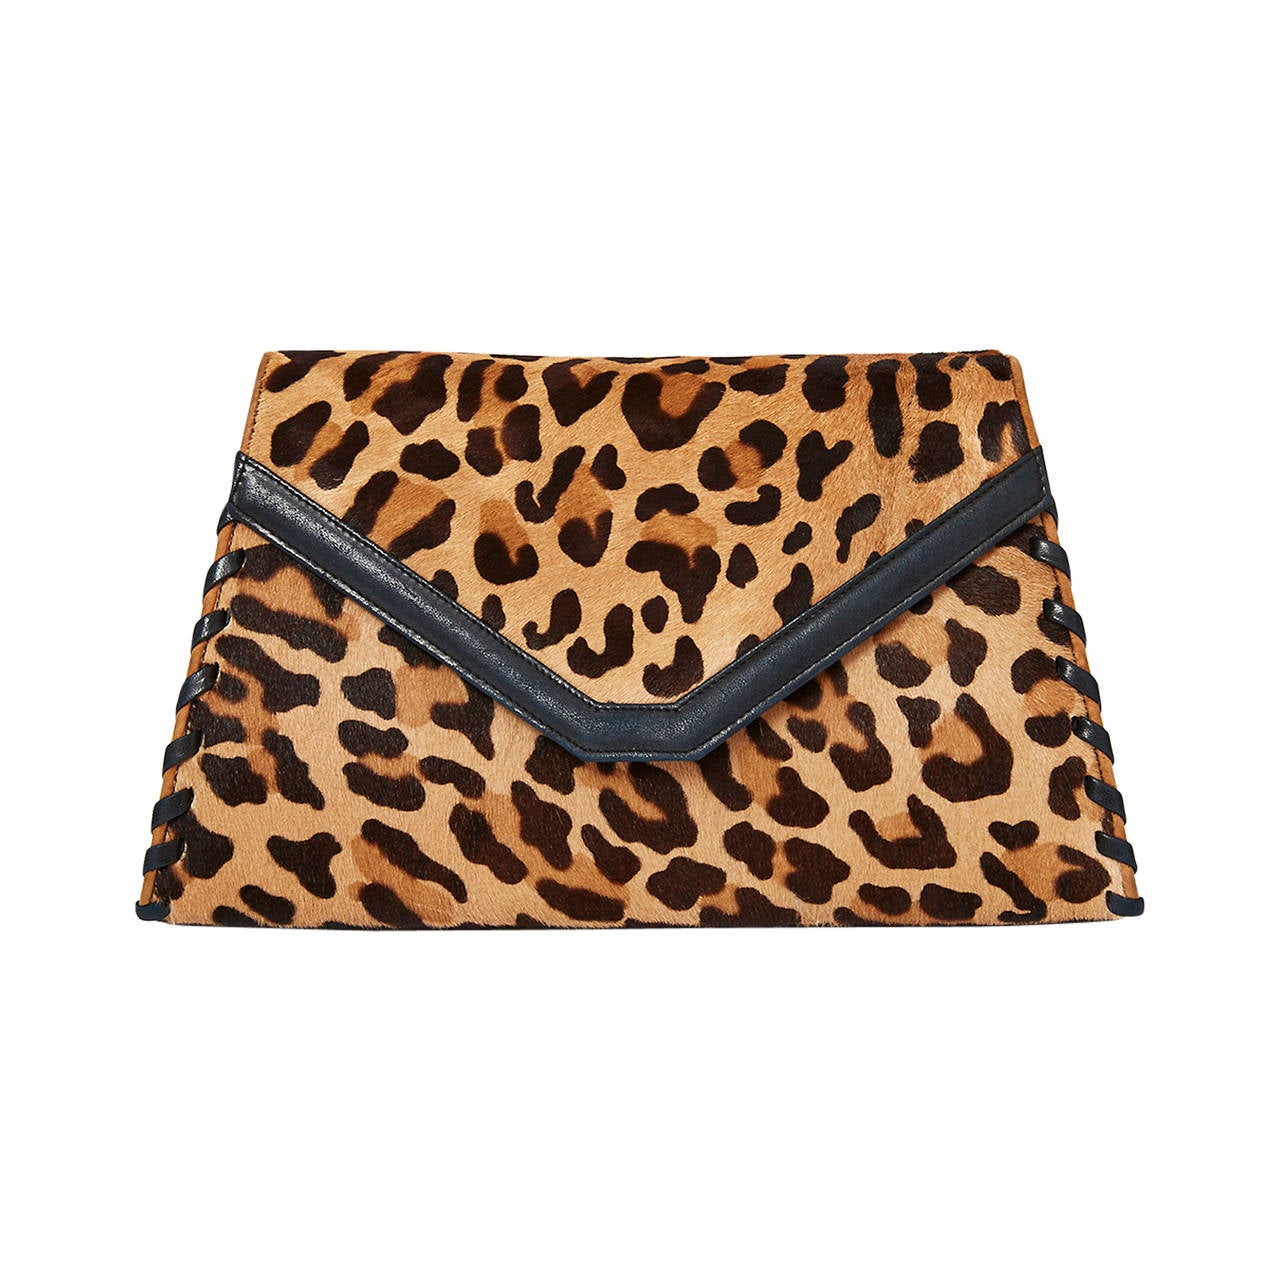 Valentino Stenciled Leopard Clutch/Shoulder Bag